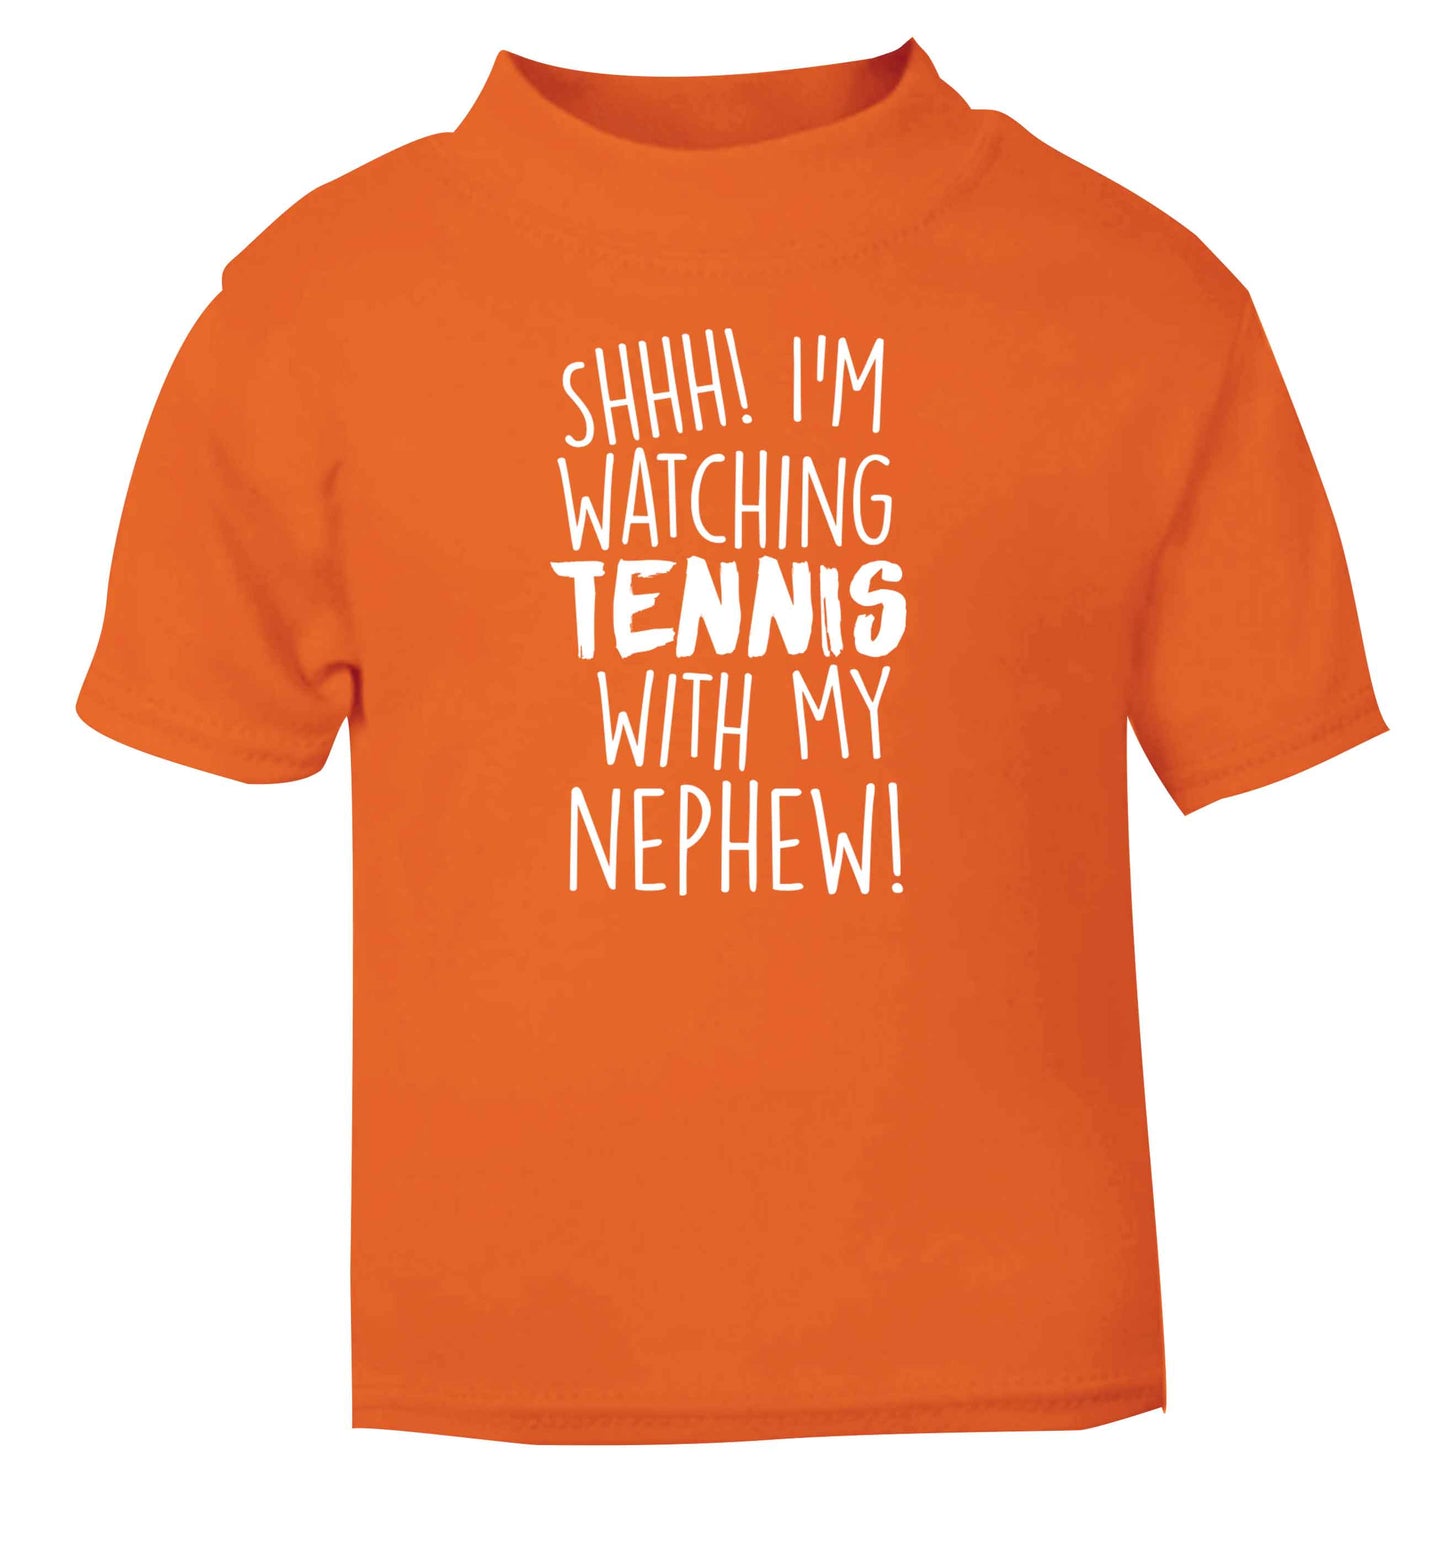 Shh! I'm watching tennis with my nephew! orange Baby Toddler Tshirt 2 Years